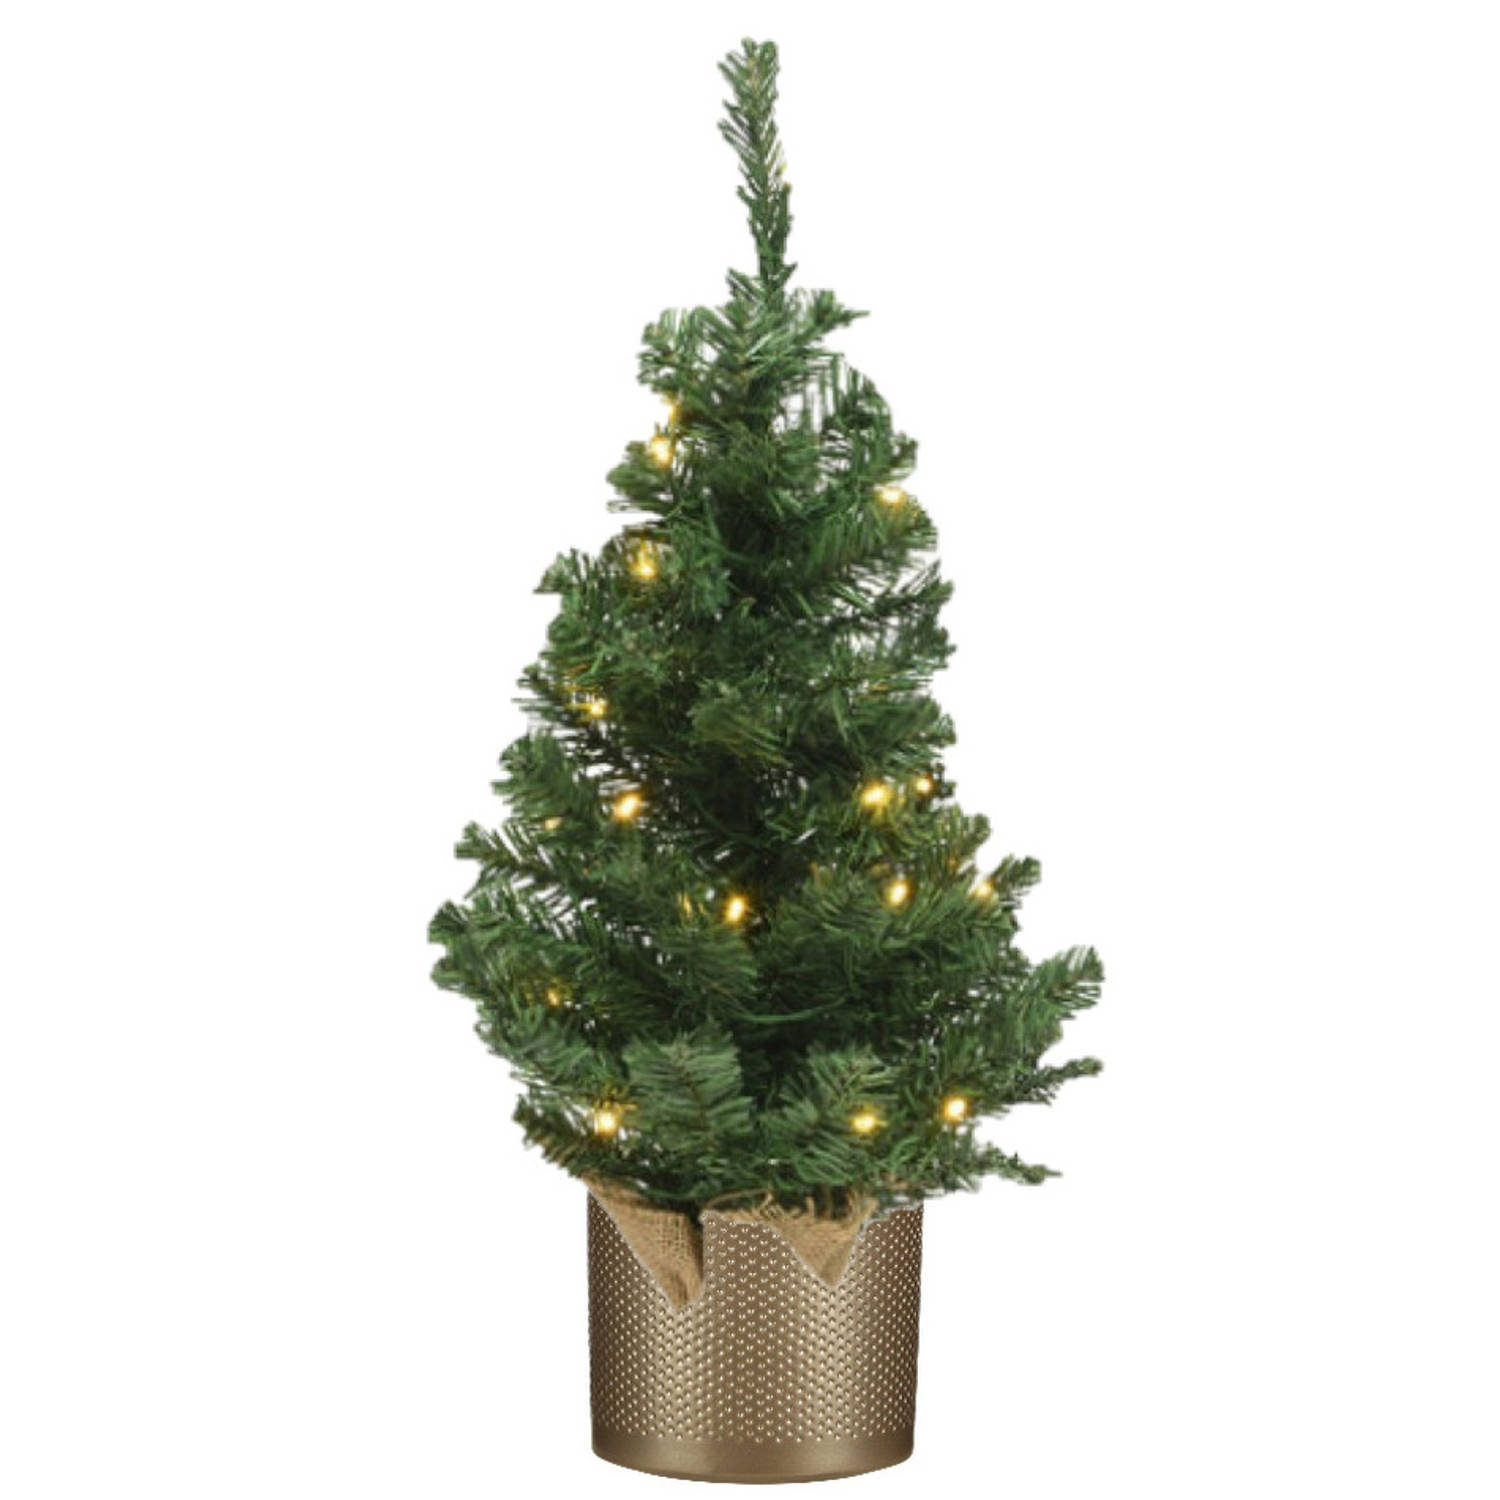 Kunstboom-kunst kerstboom groen 60 cm met verlichting en gouden pot Kunstkerstboom